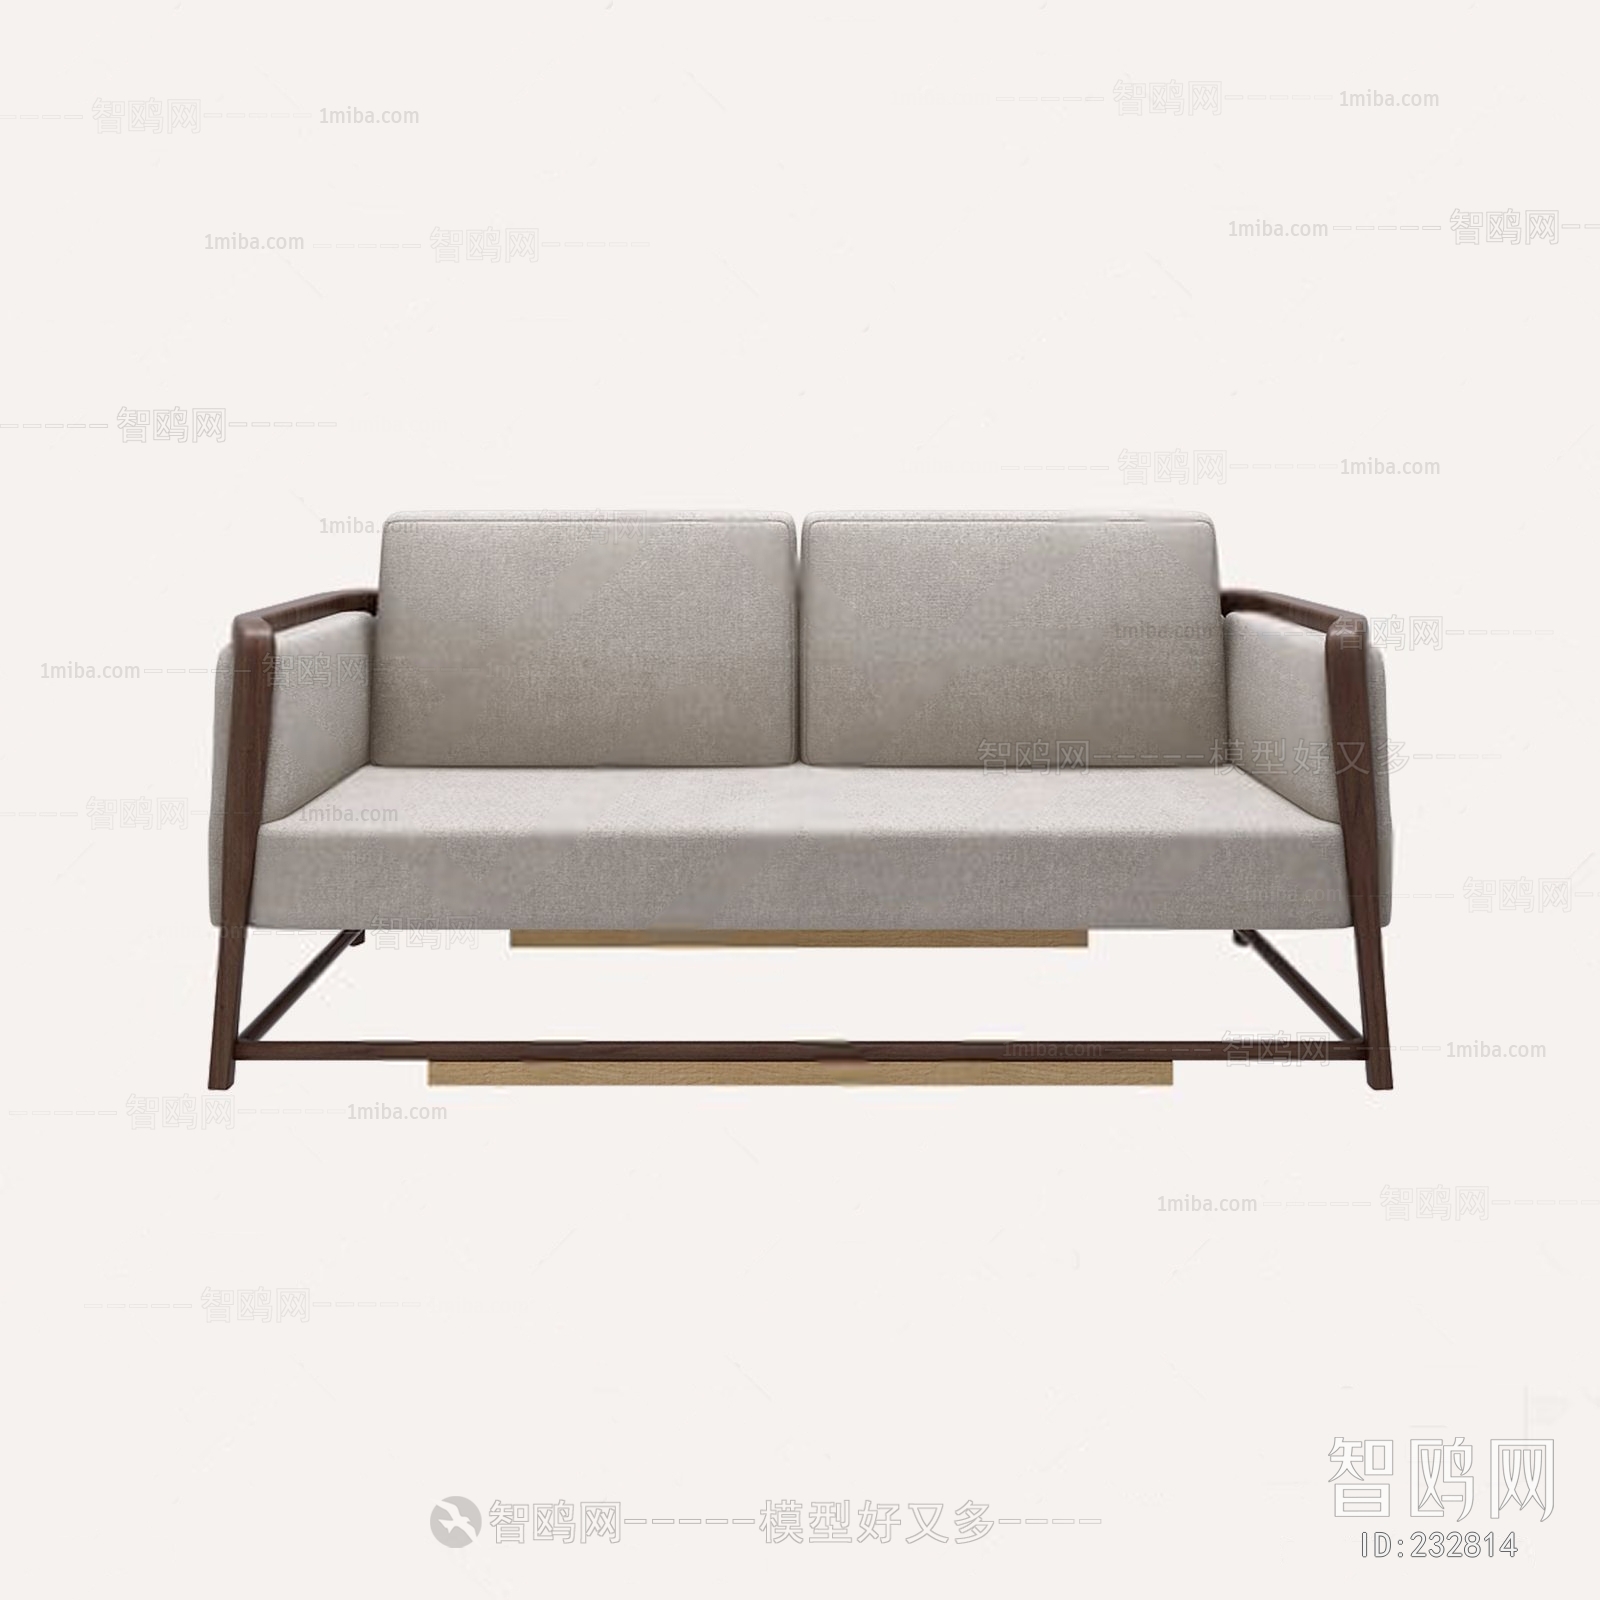 上下 SHANG XIA 新中式多人沙发